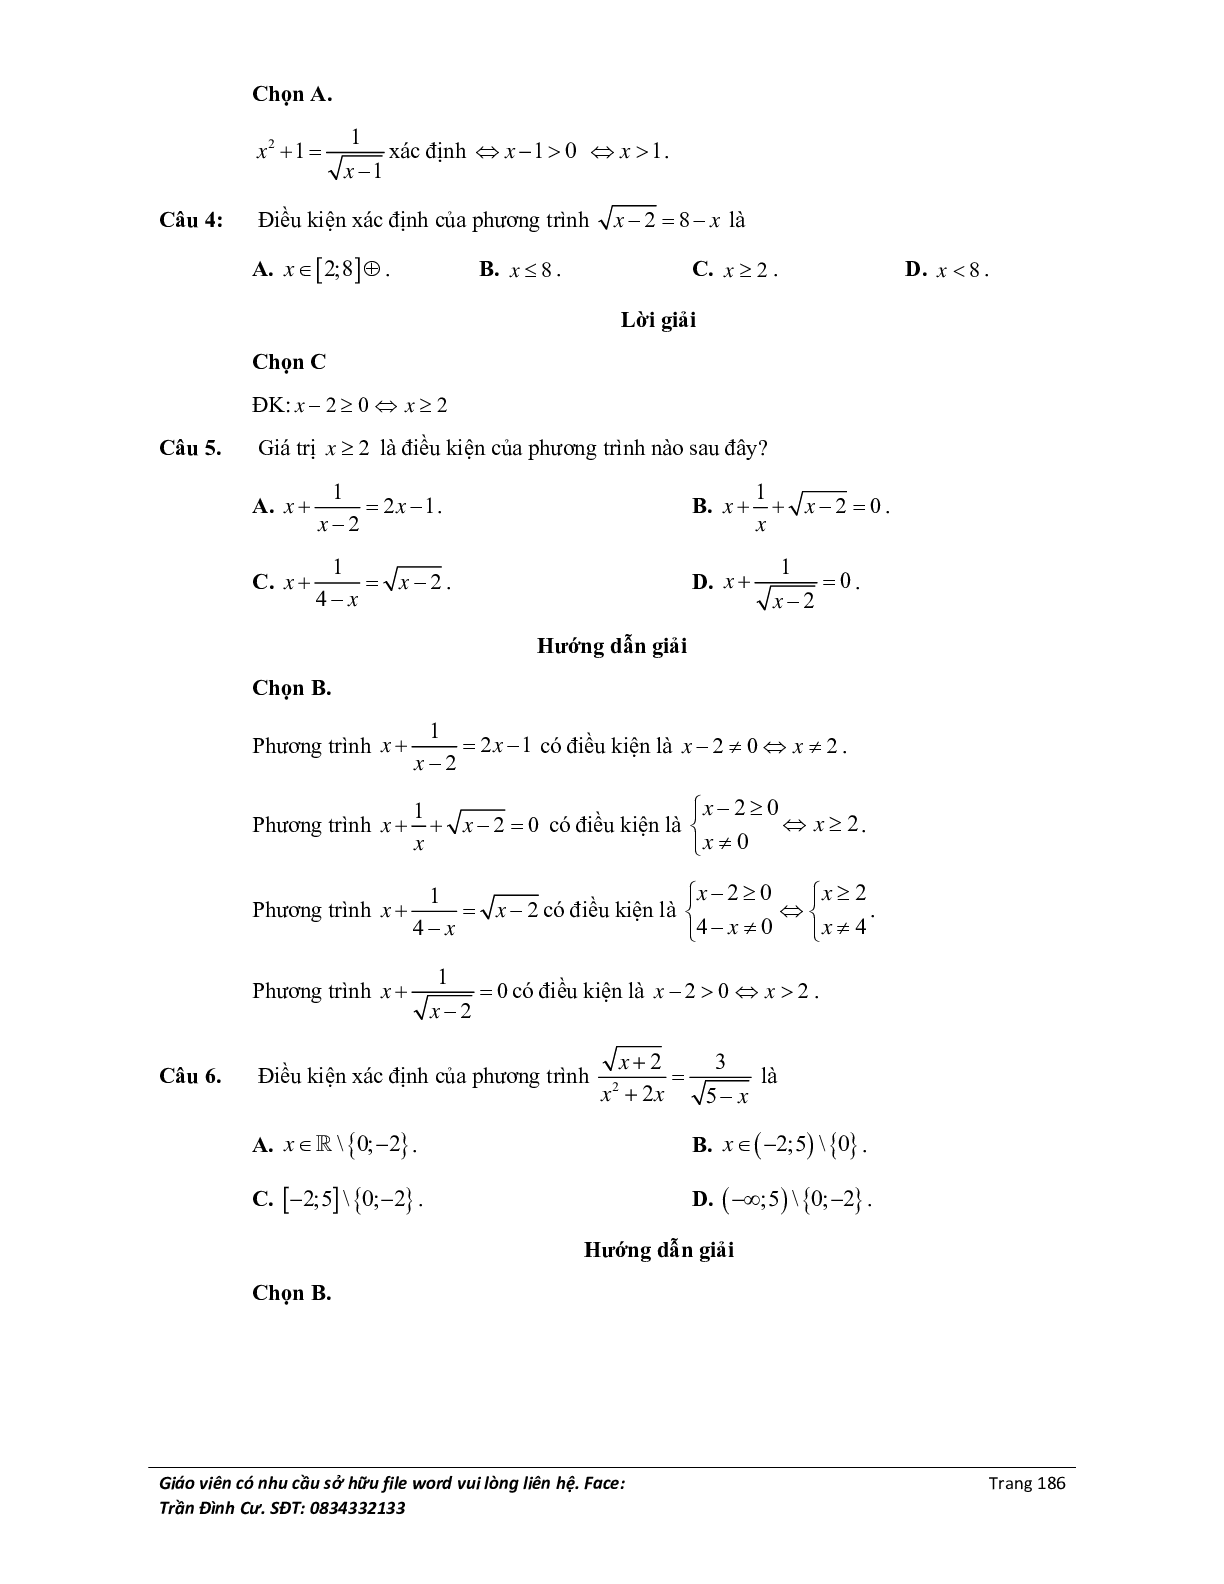 Đại cương về phương trình môn Toán lớp 10 (trang 4)